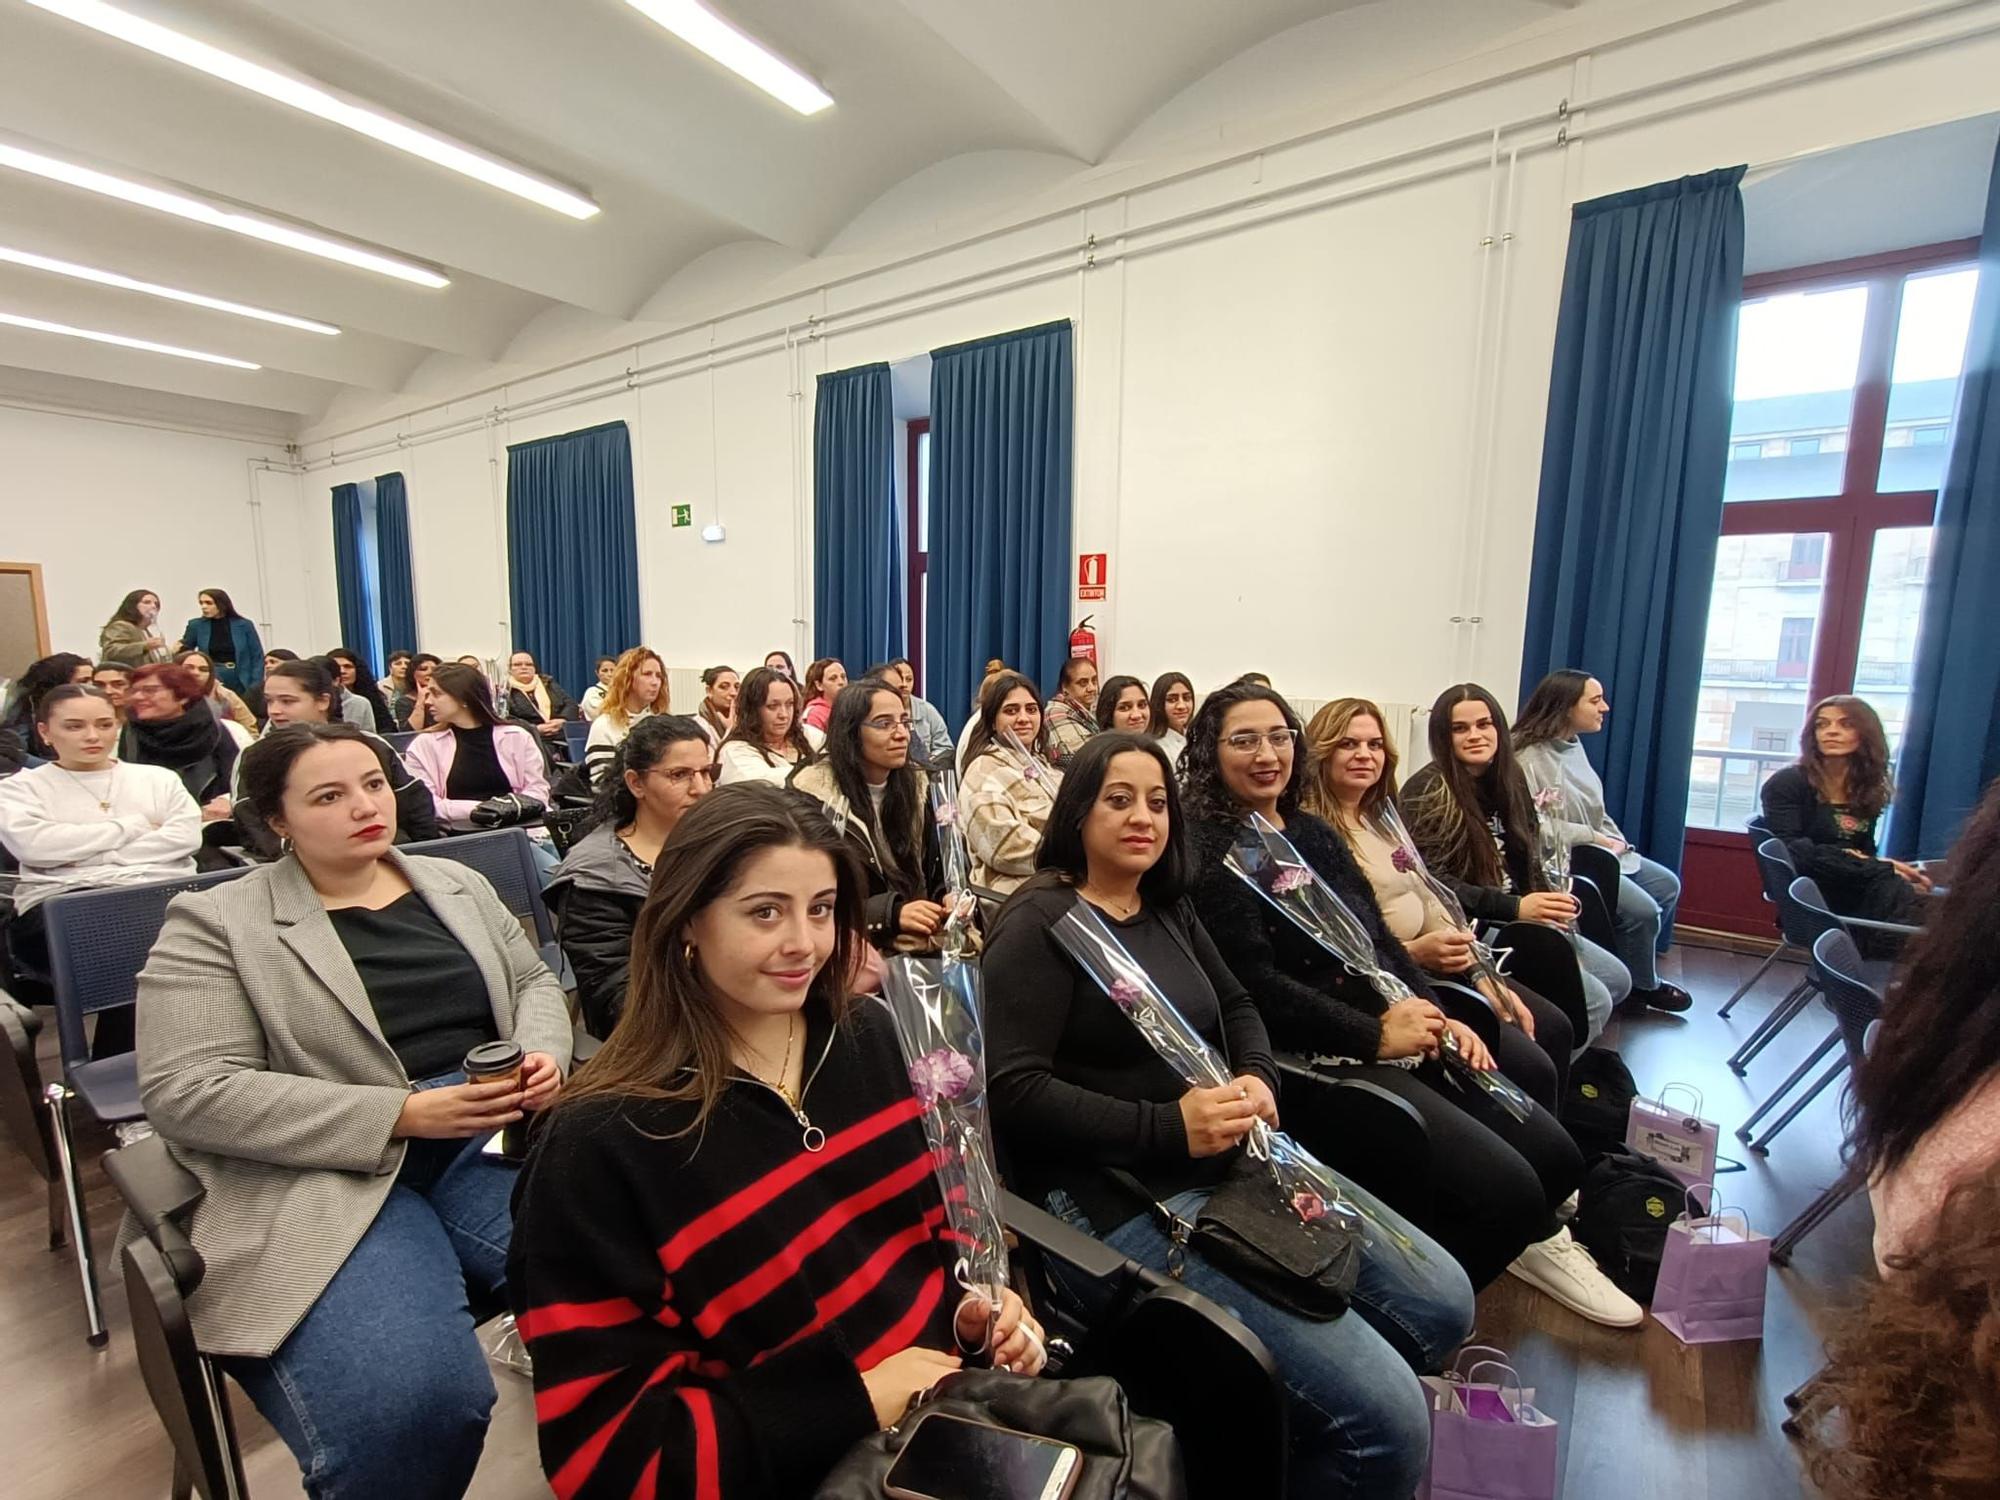 Las Jornadas de Mujeres Gitanas de Asturias "Romí Calí", en imágenes